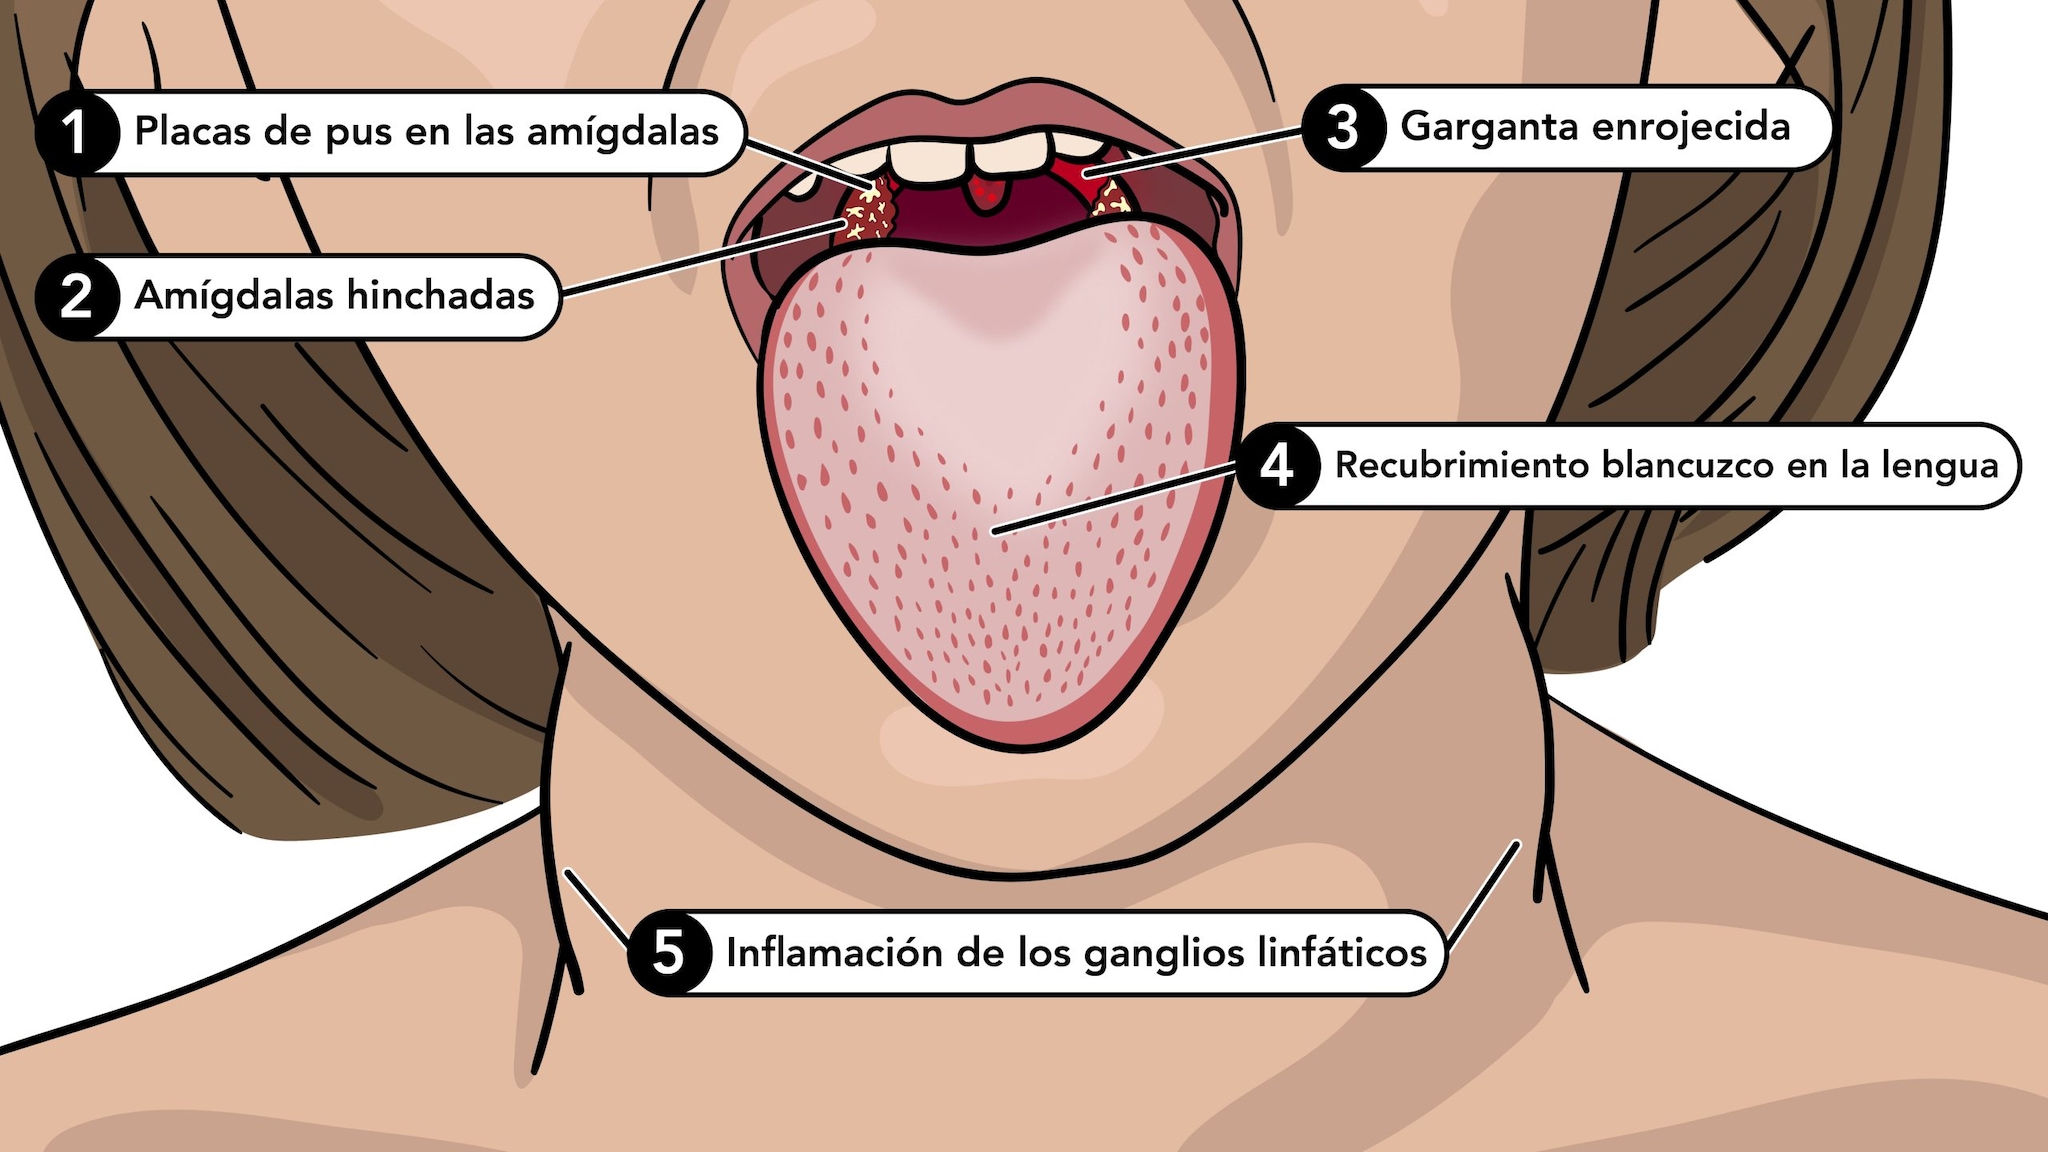 Los síntomas de la escarlatina incluyen lengua blanca, garganta roja, amigdalas hinchadas y ganglios linfáticos inflamados.